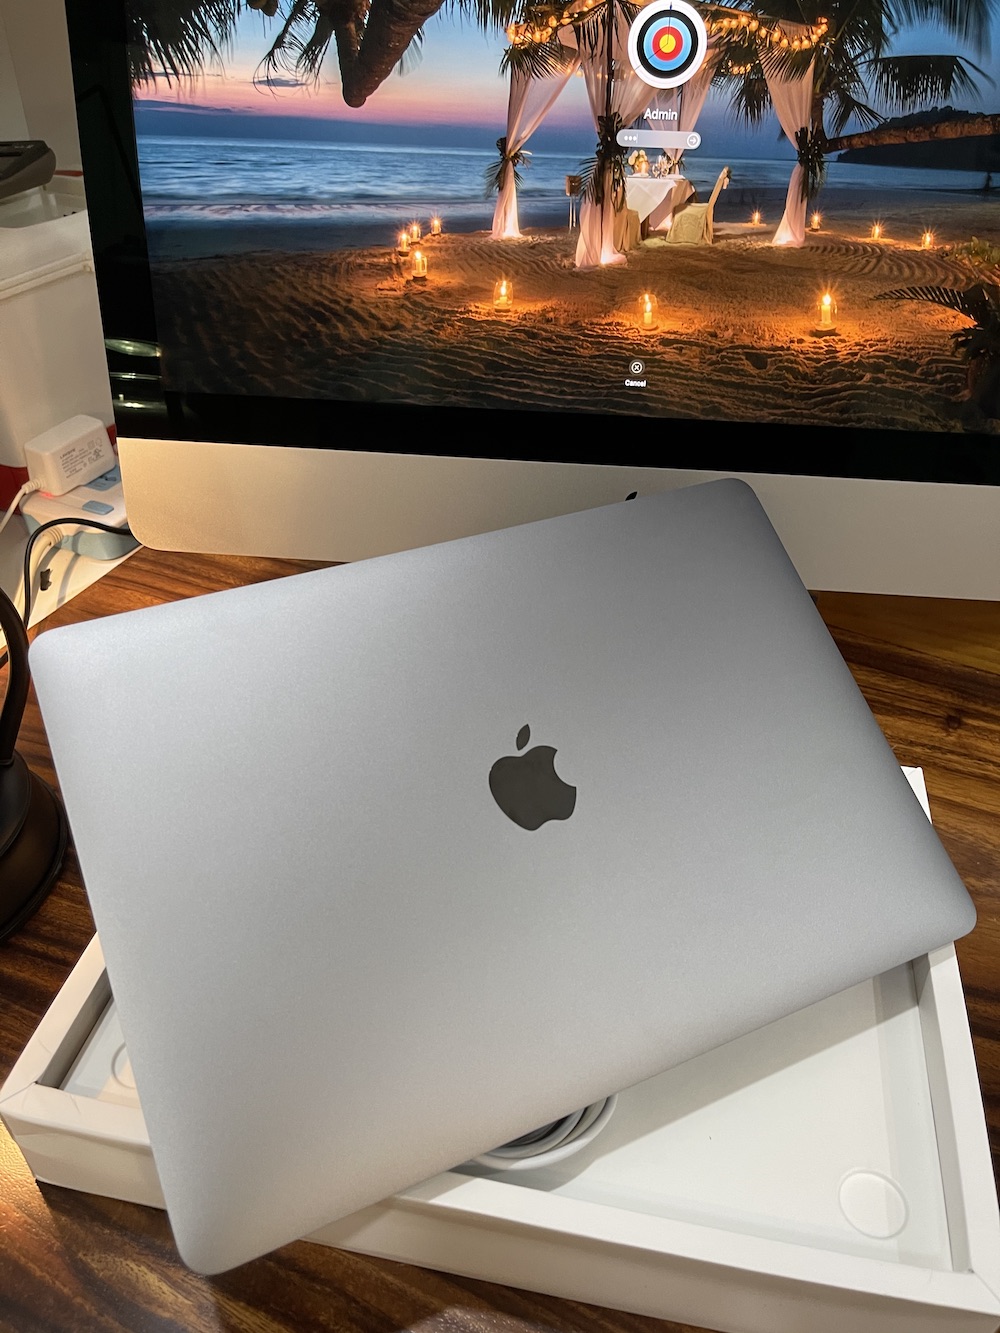 Macbook Pro 13 inch 2020